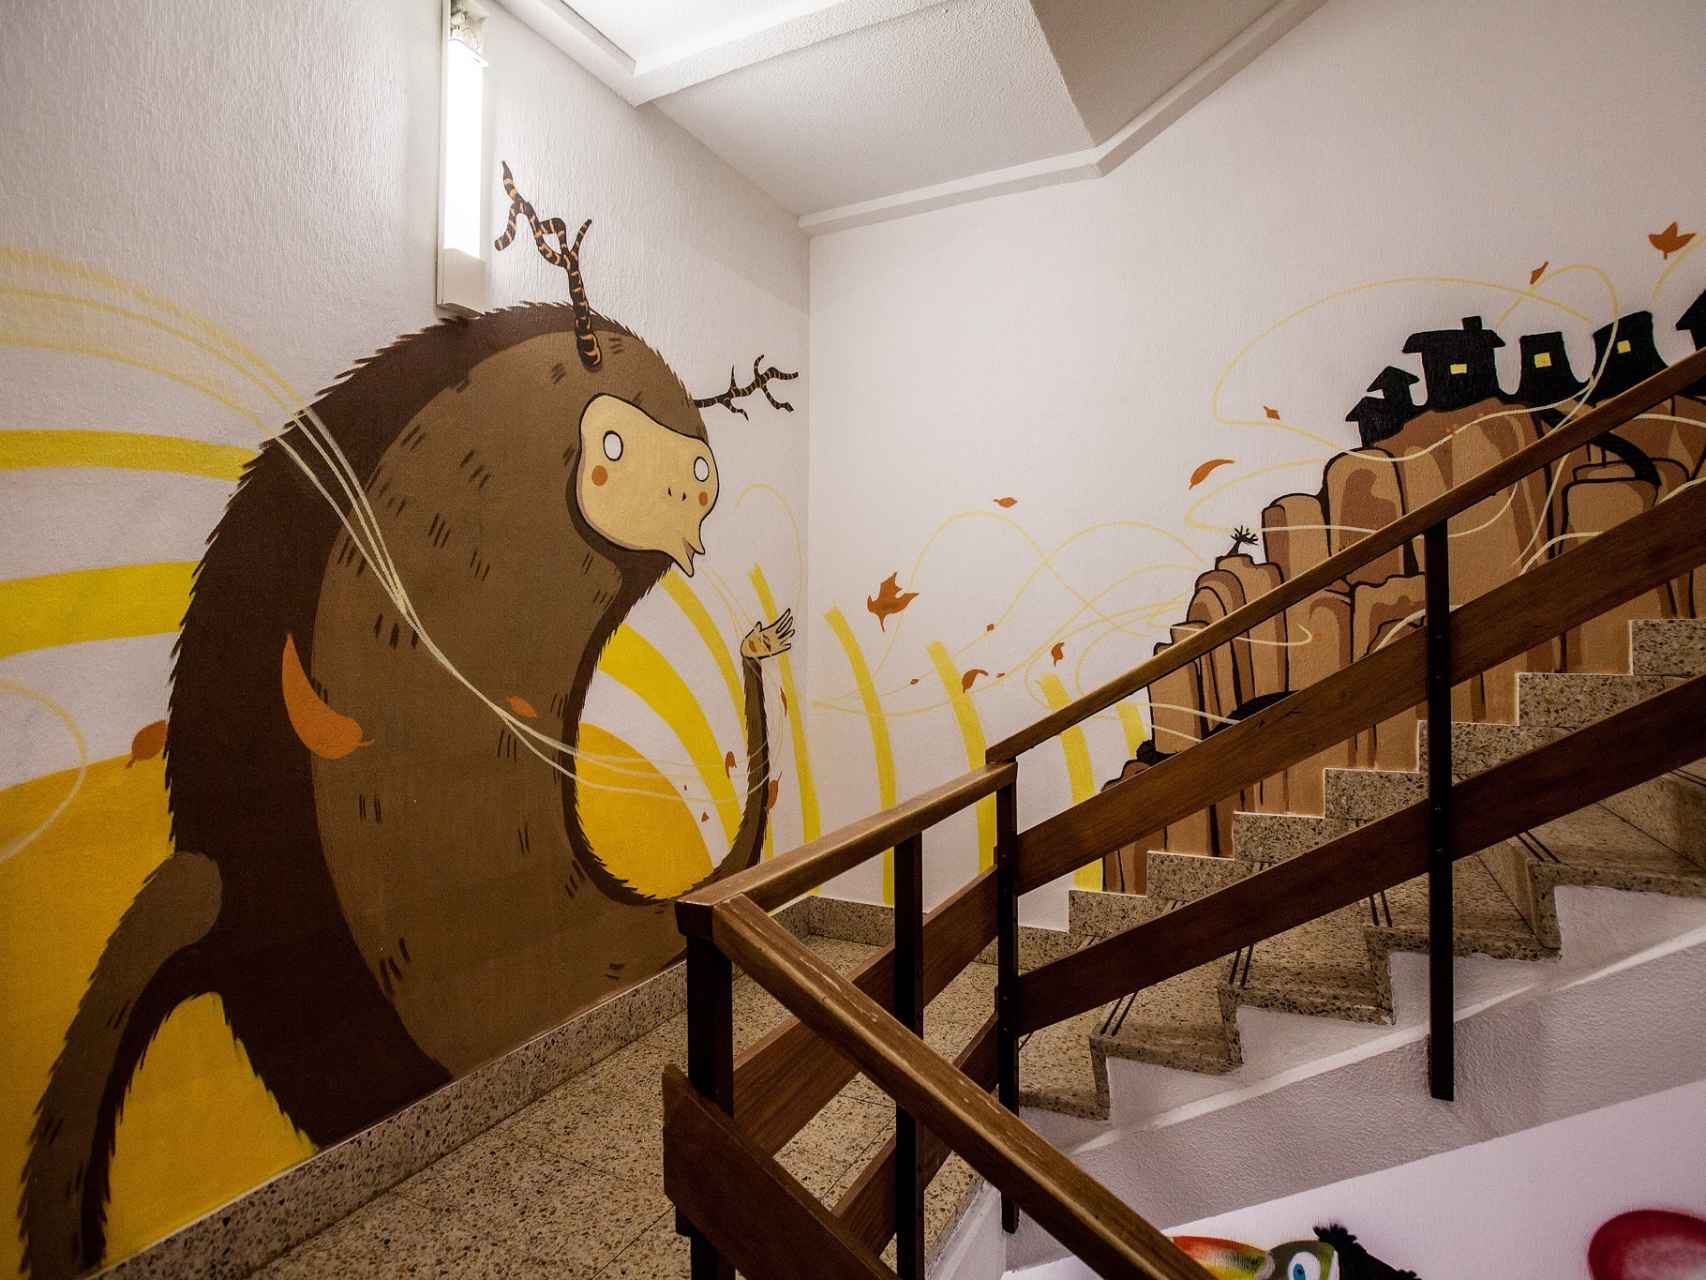 Escaleras del Hospital Materno Infantil de Zaragoza.